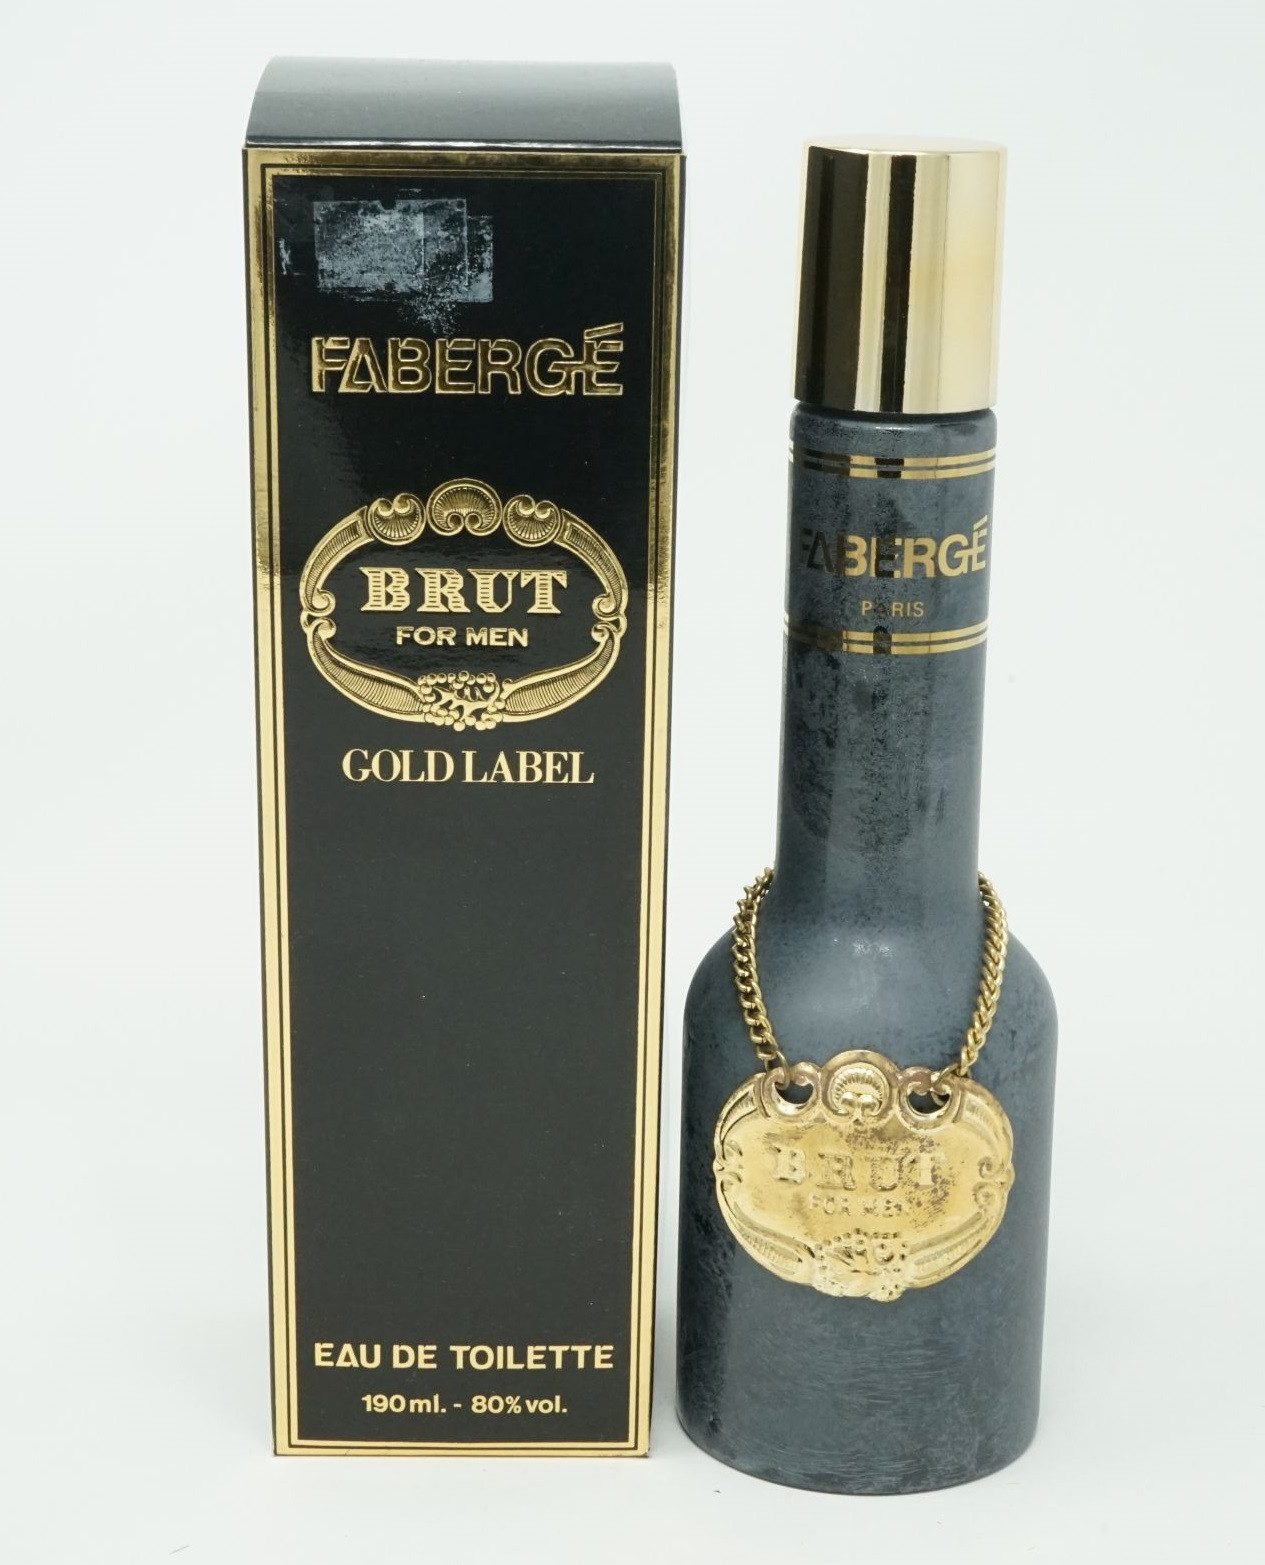 faconnable Eau de Toilette Faberge Brut Gold Label Eau de Toilette 190 ml